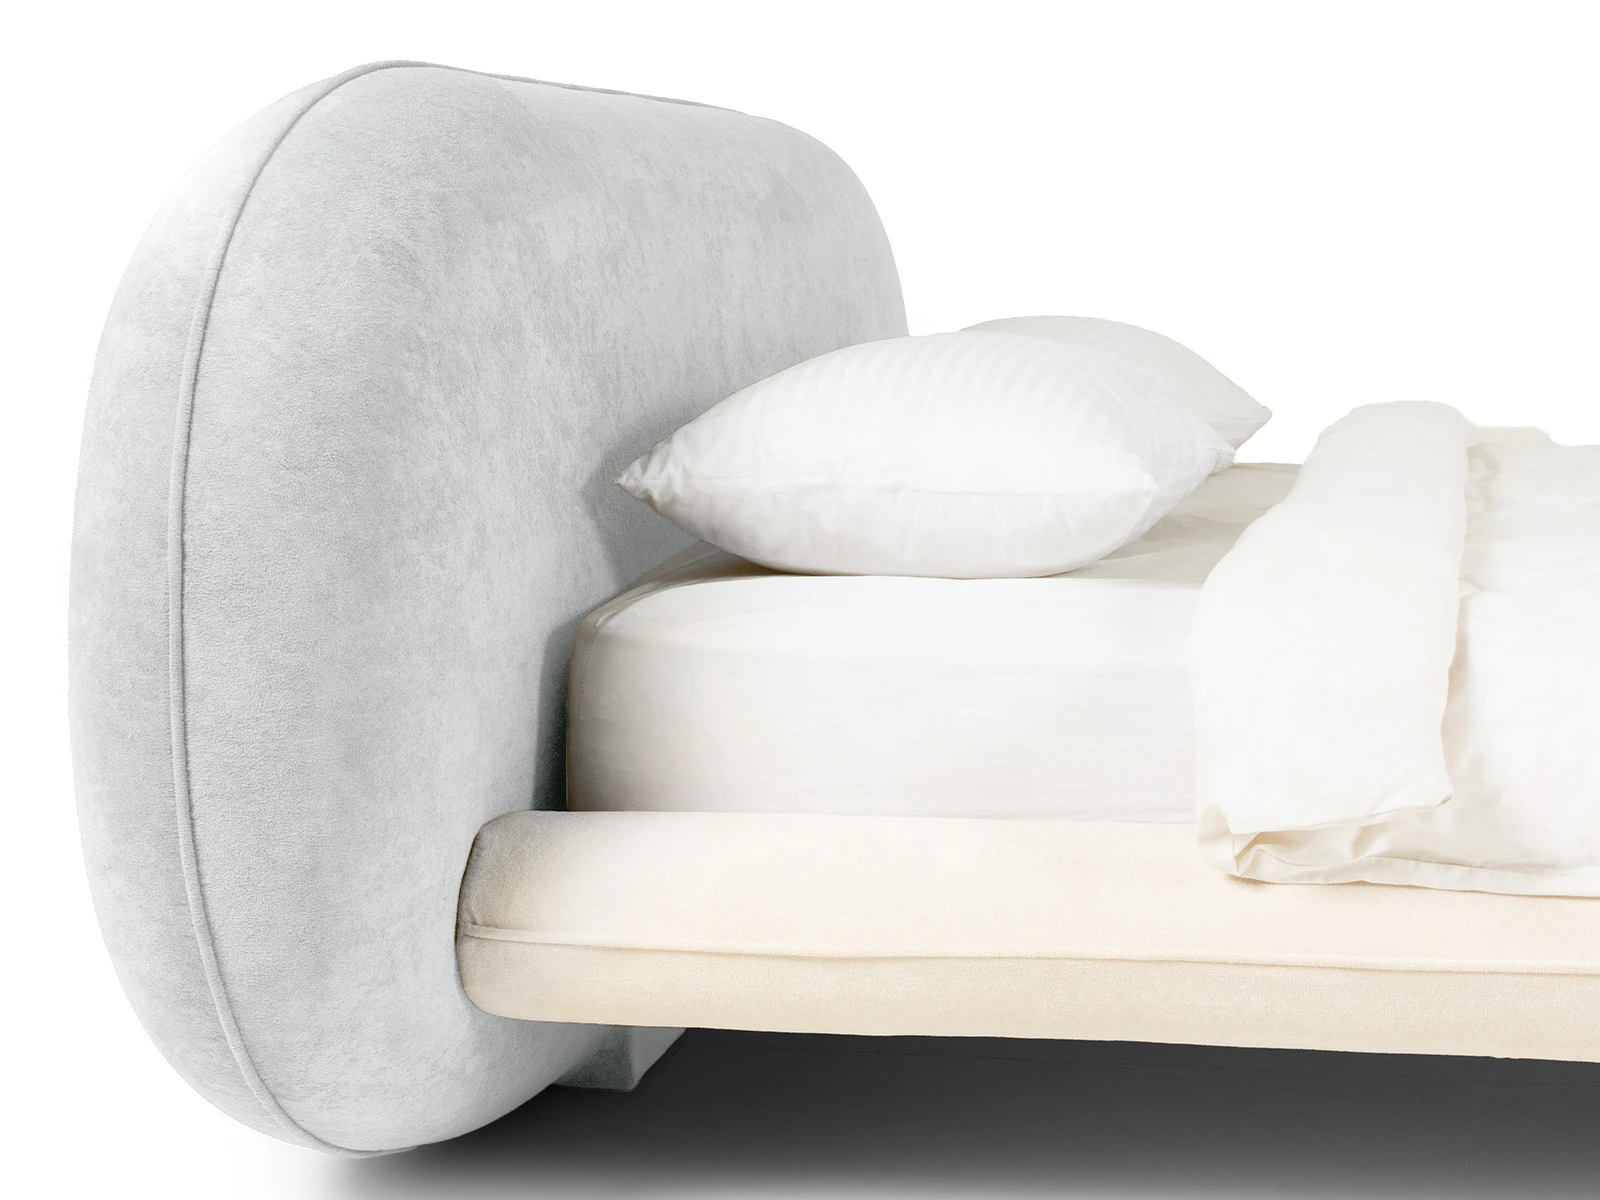 Кровать Softbay 160x200 (букле) белый серый 869916